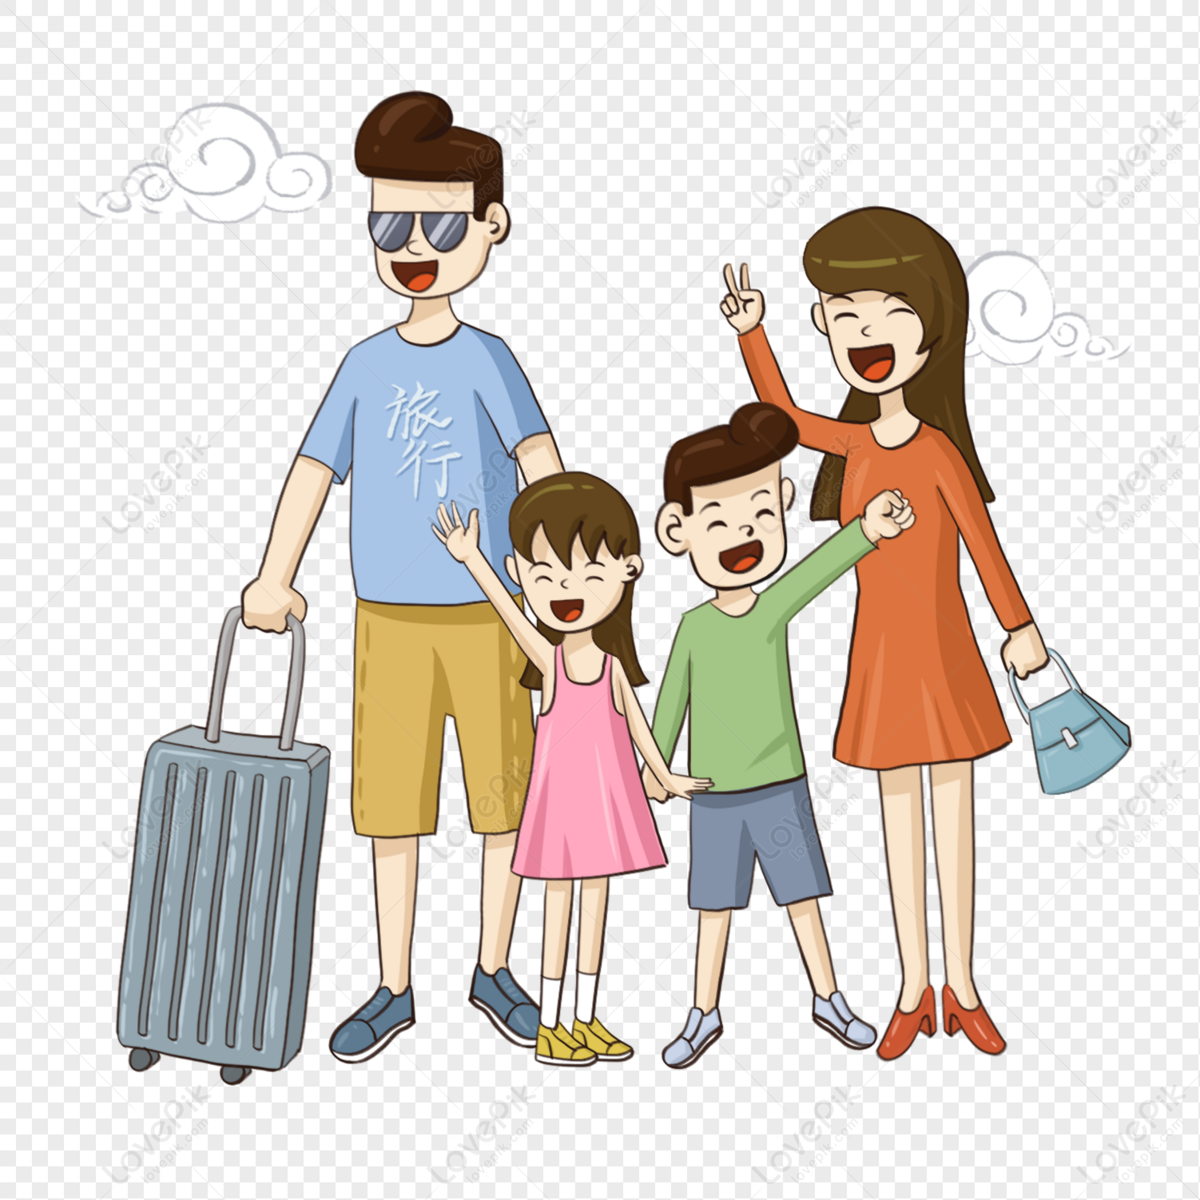 Vẽ gia đình du lịch: Chuyến đi du lịch của gia đình là một chủ đề phổ biến và rất đáng nhớ. Cùng xem qua các tác phẩm vẽ gia đình du lịch để tìm hiểu những thước phim đầy màu sắc và ấn tượng được tái hiện lại thông qua những bức tranh tuyệt đẹp.